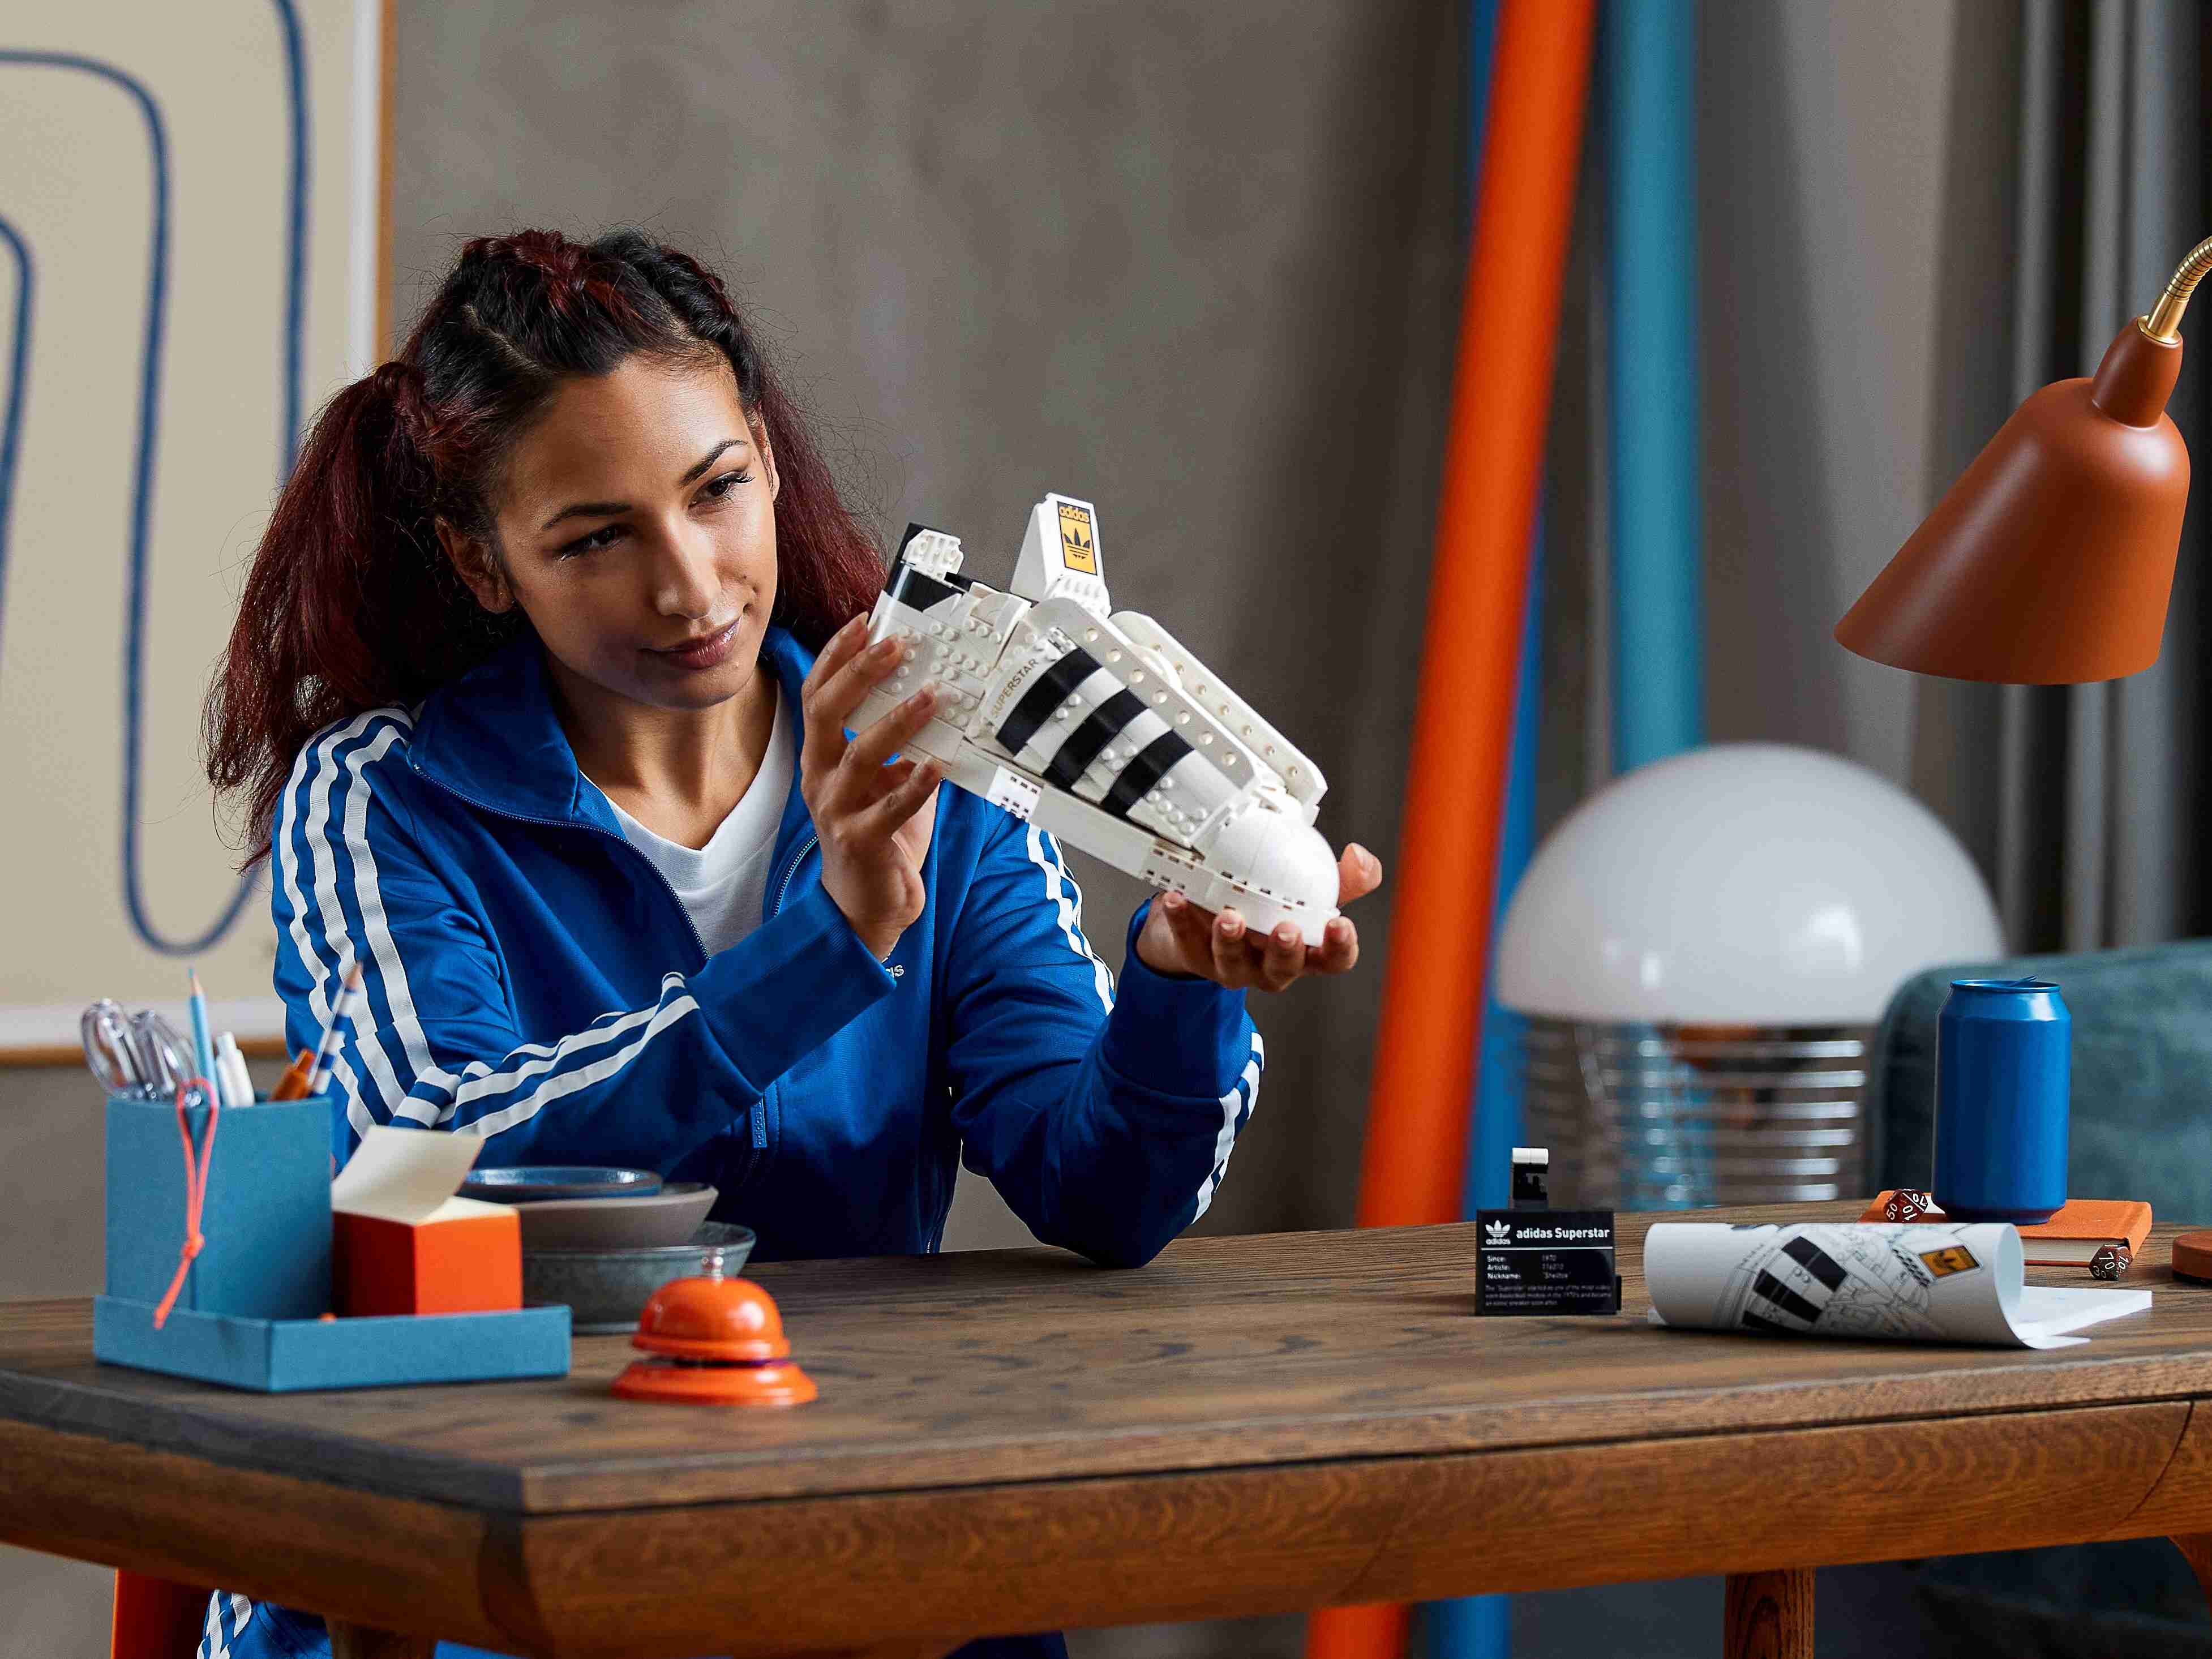 LEGO 10282 Adidas Originals Superstar, Sportschuh Sammlerstück zum Ausstellen